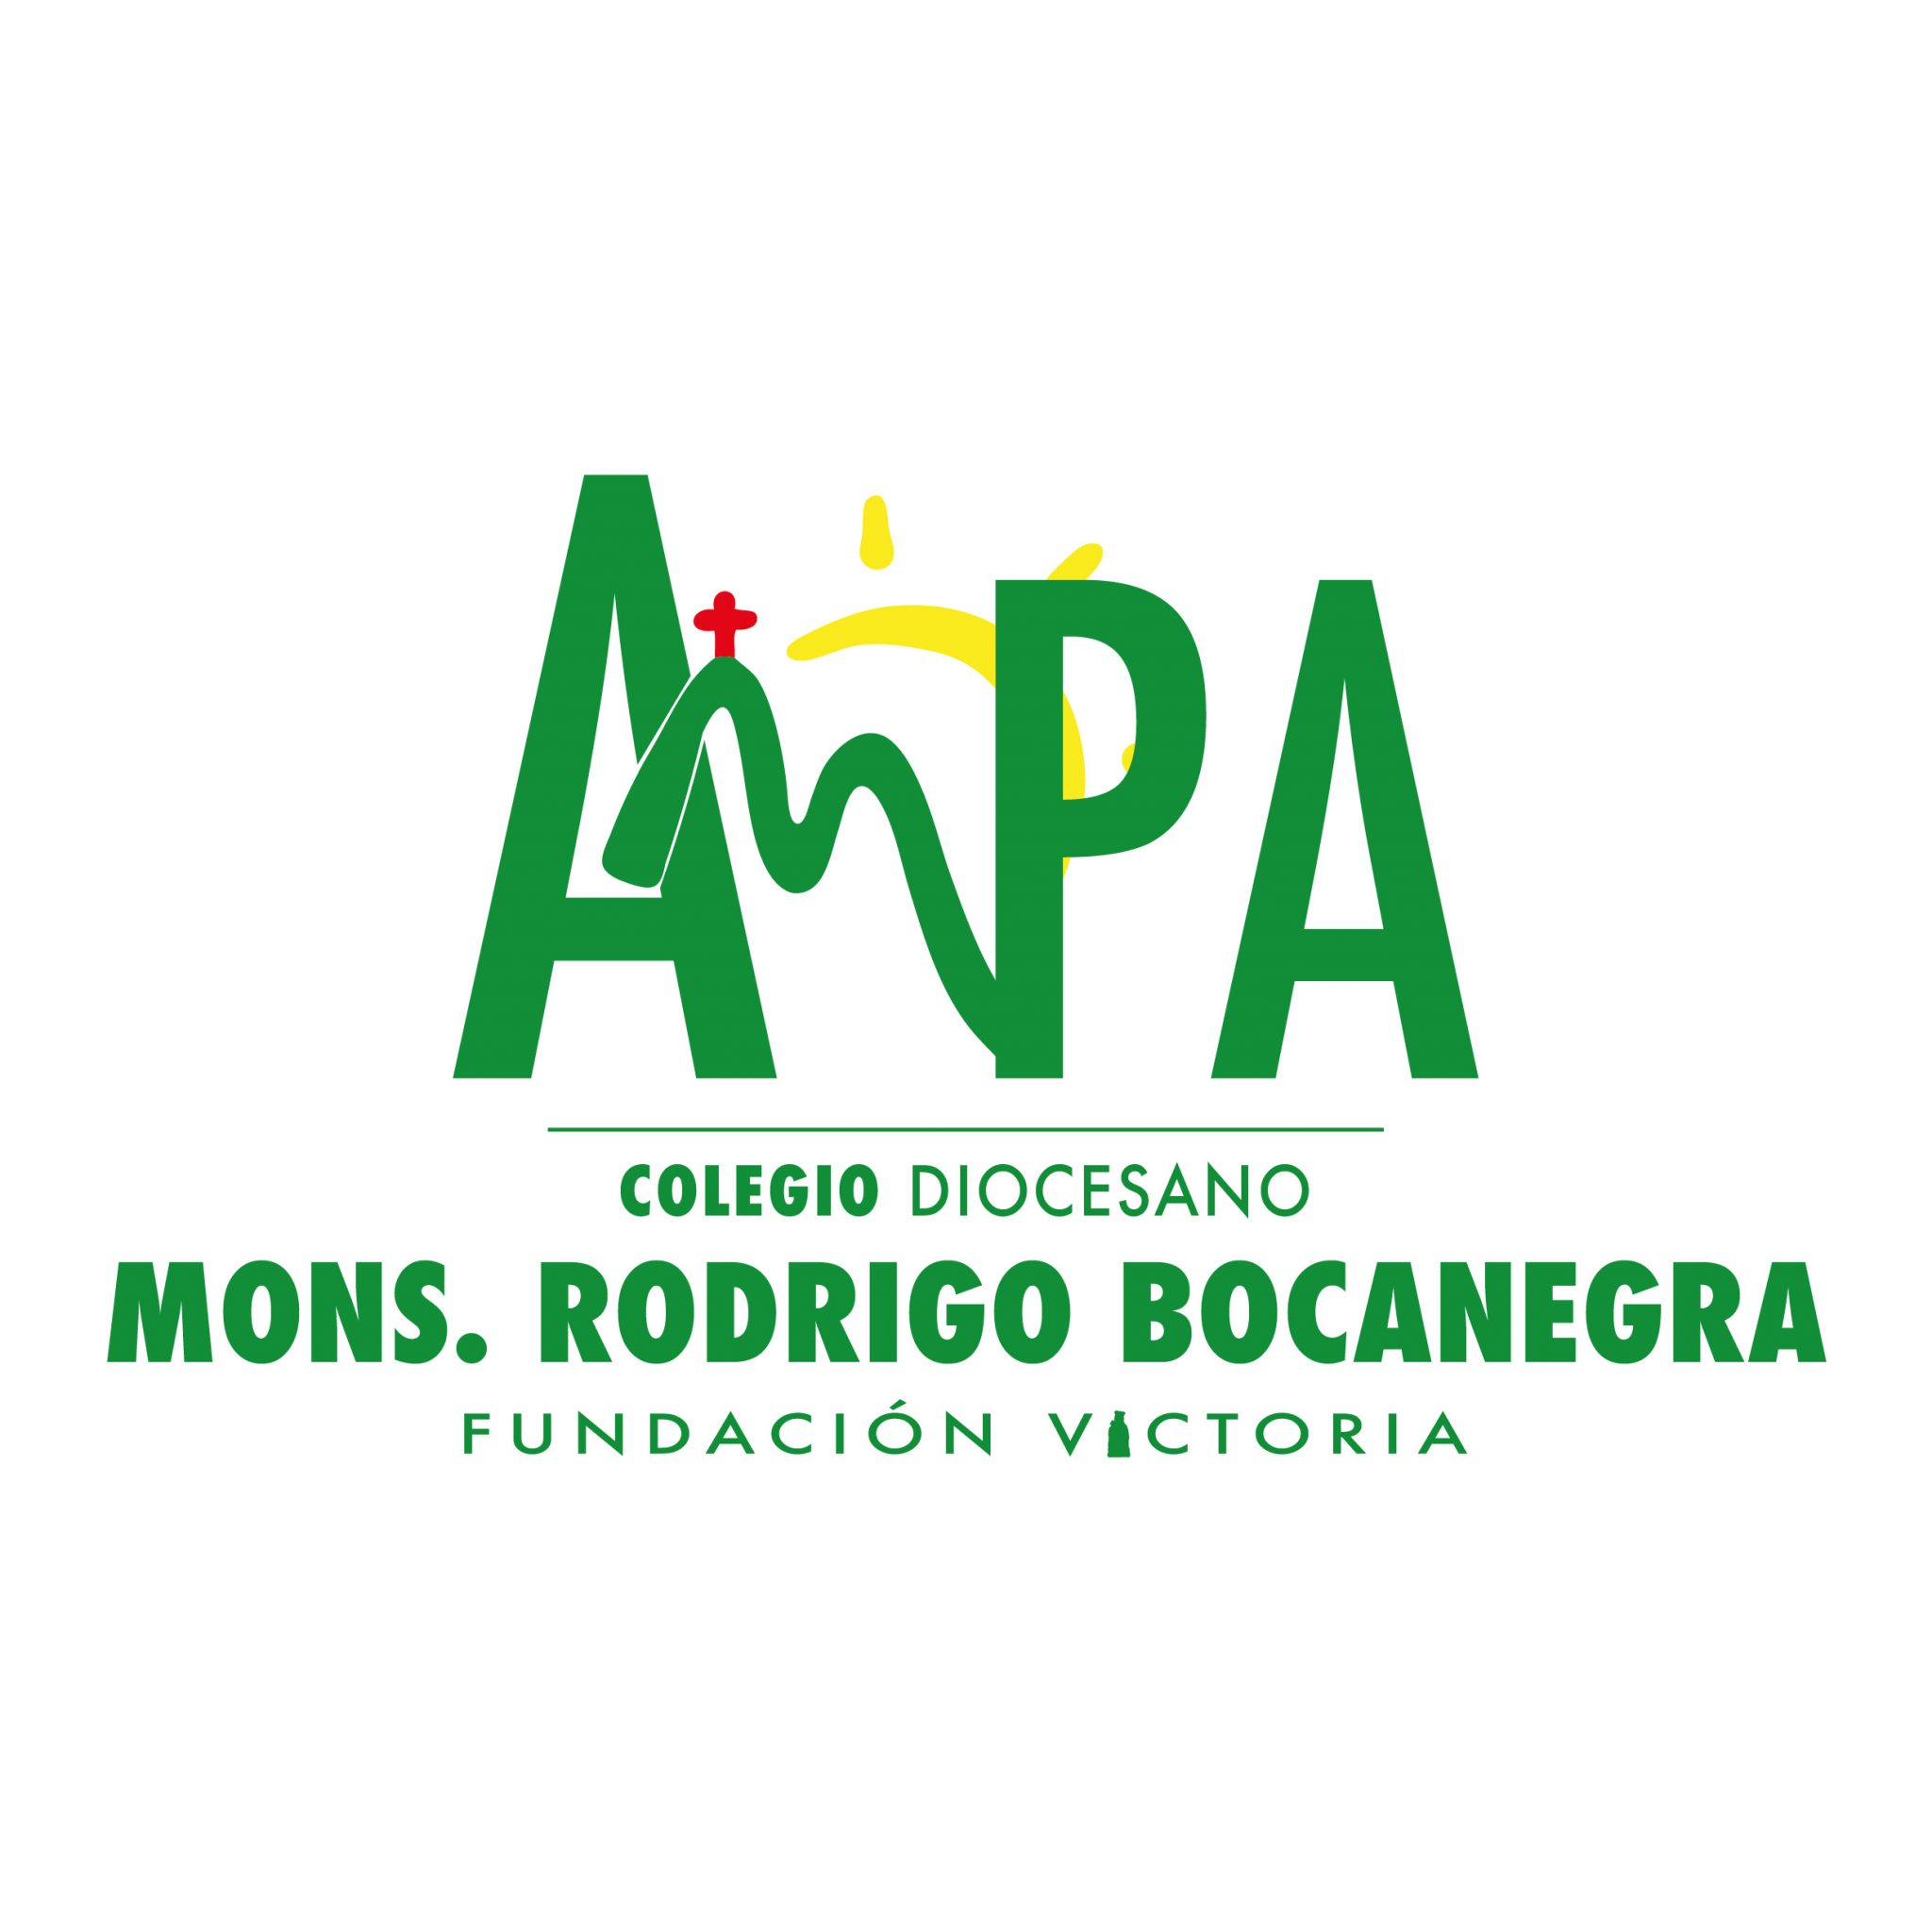 AMPA - Colegio Diocesano Monseñor Rodrigo Bocanegra